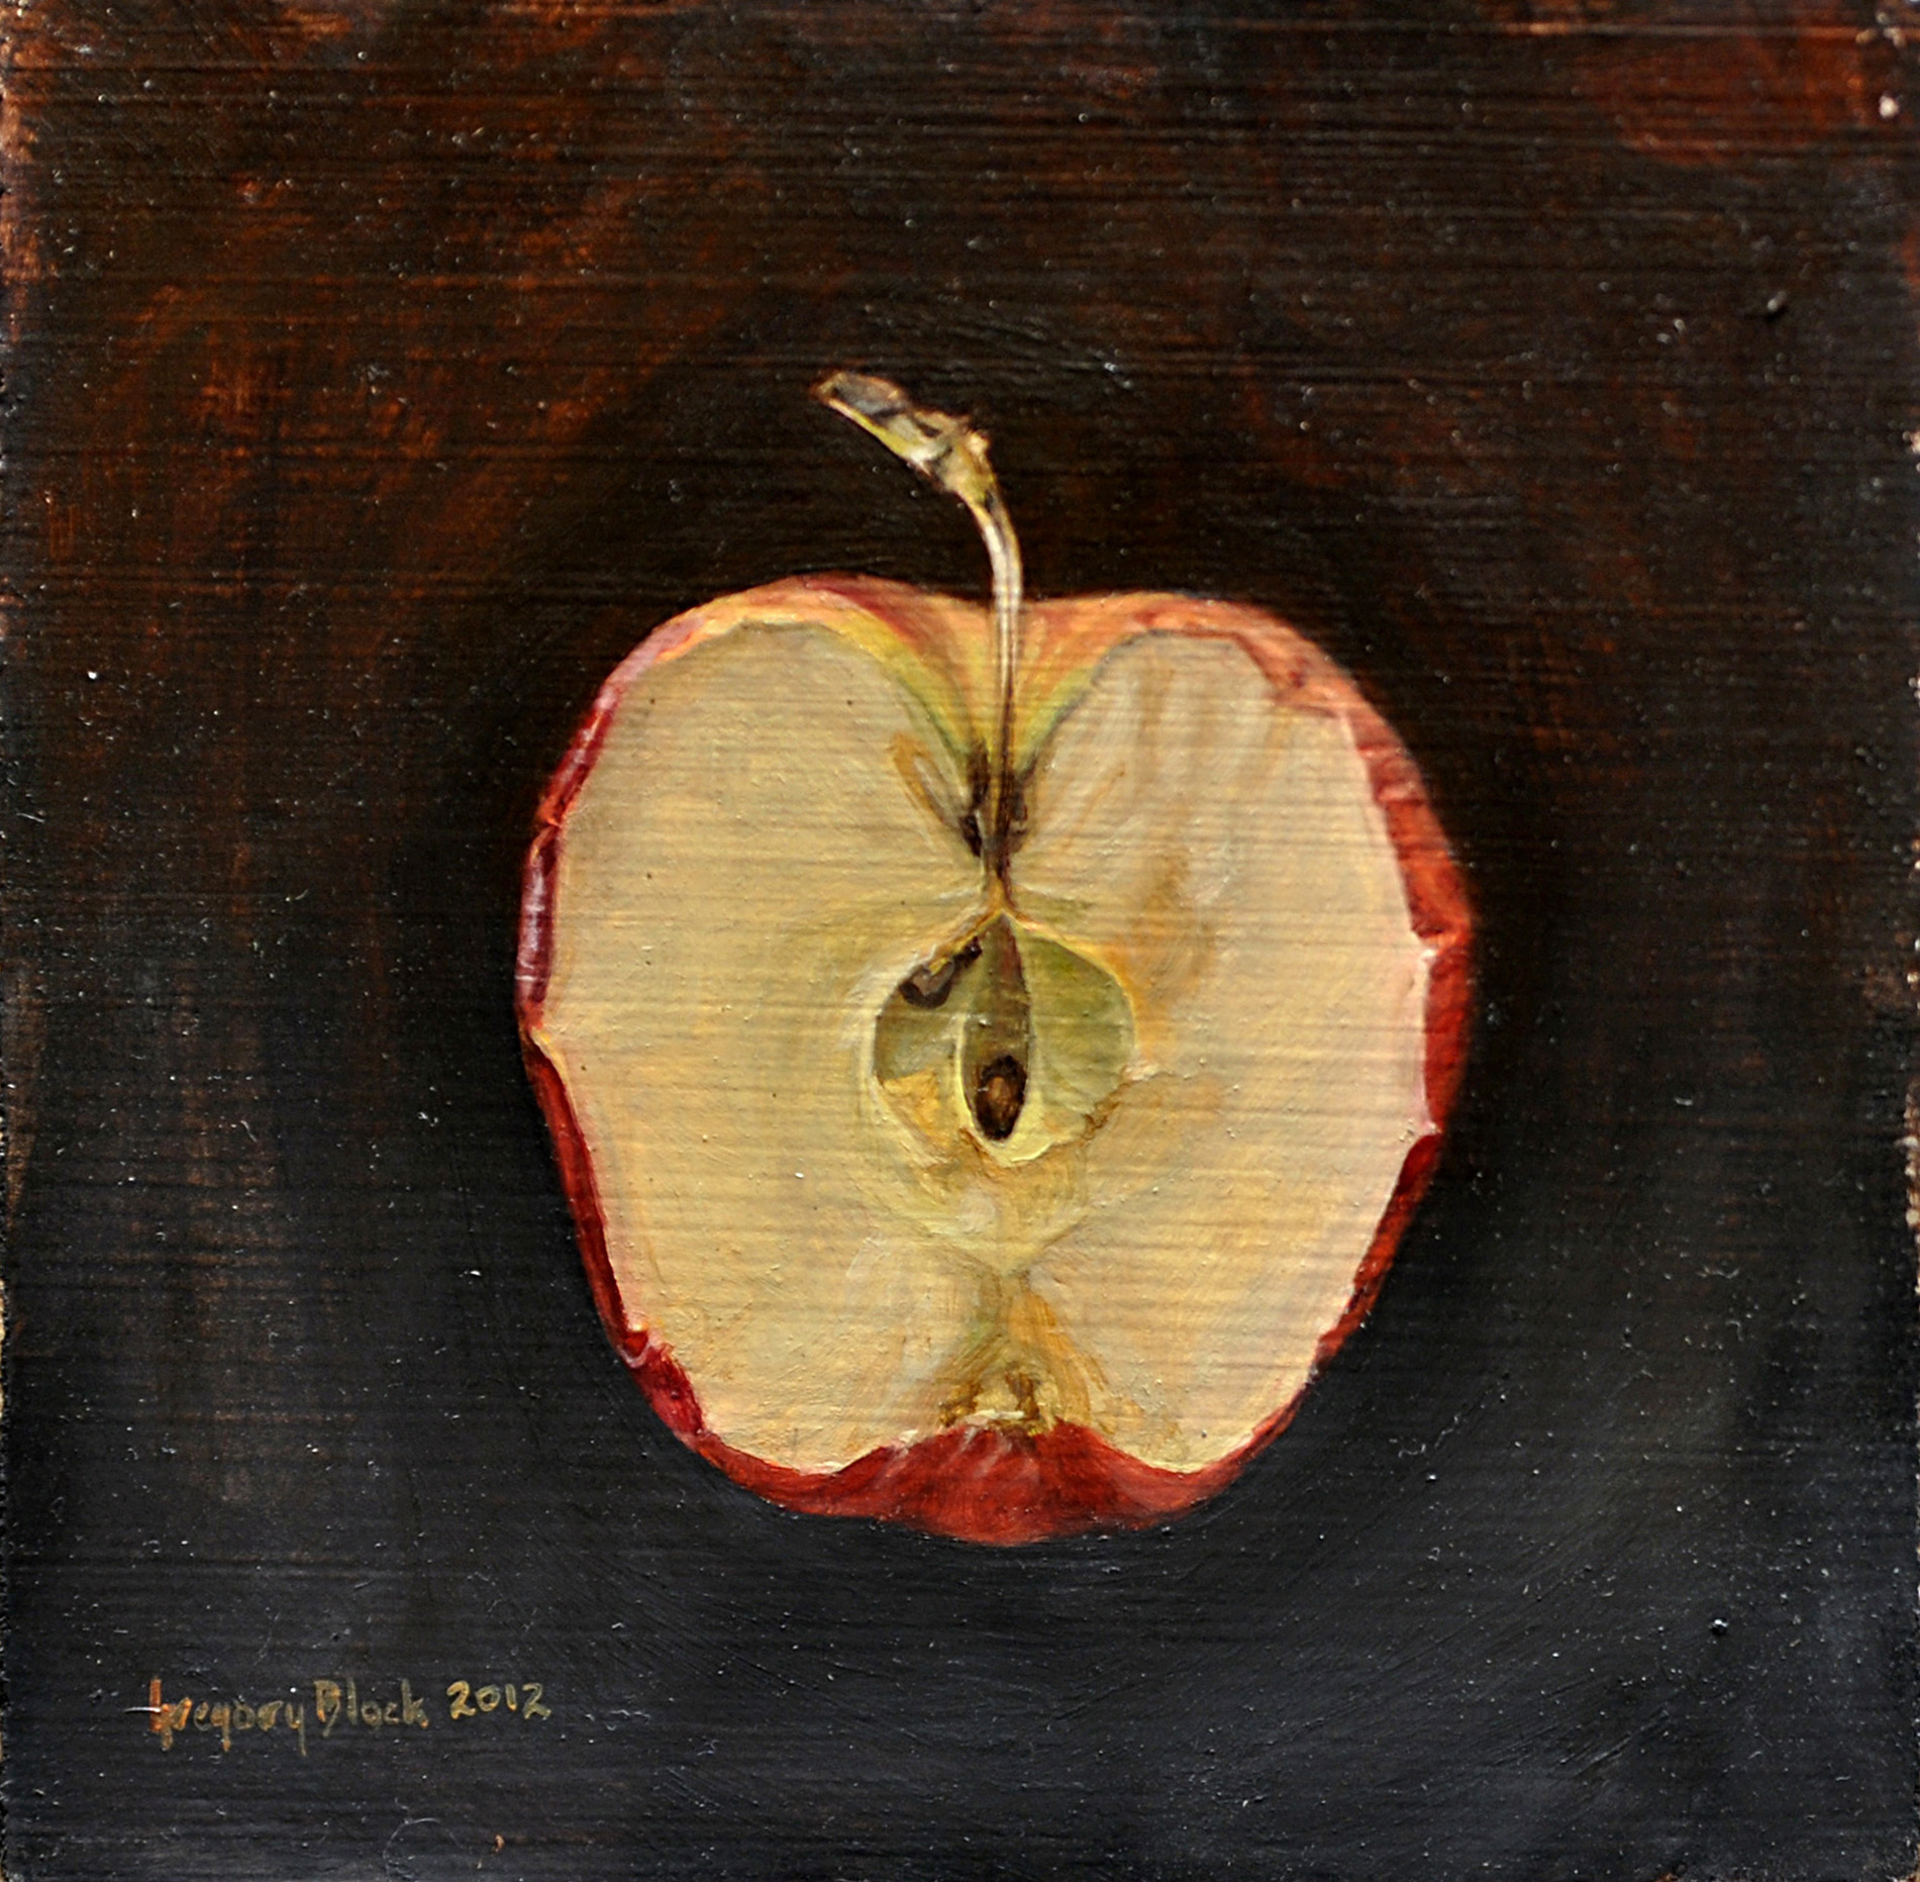 Cut Apple by Gregory Block